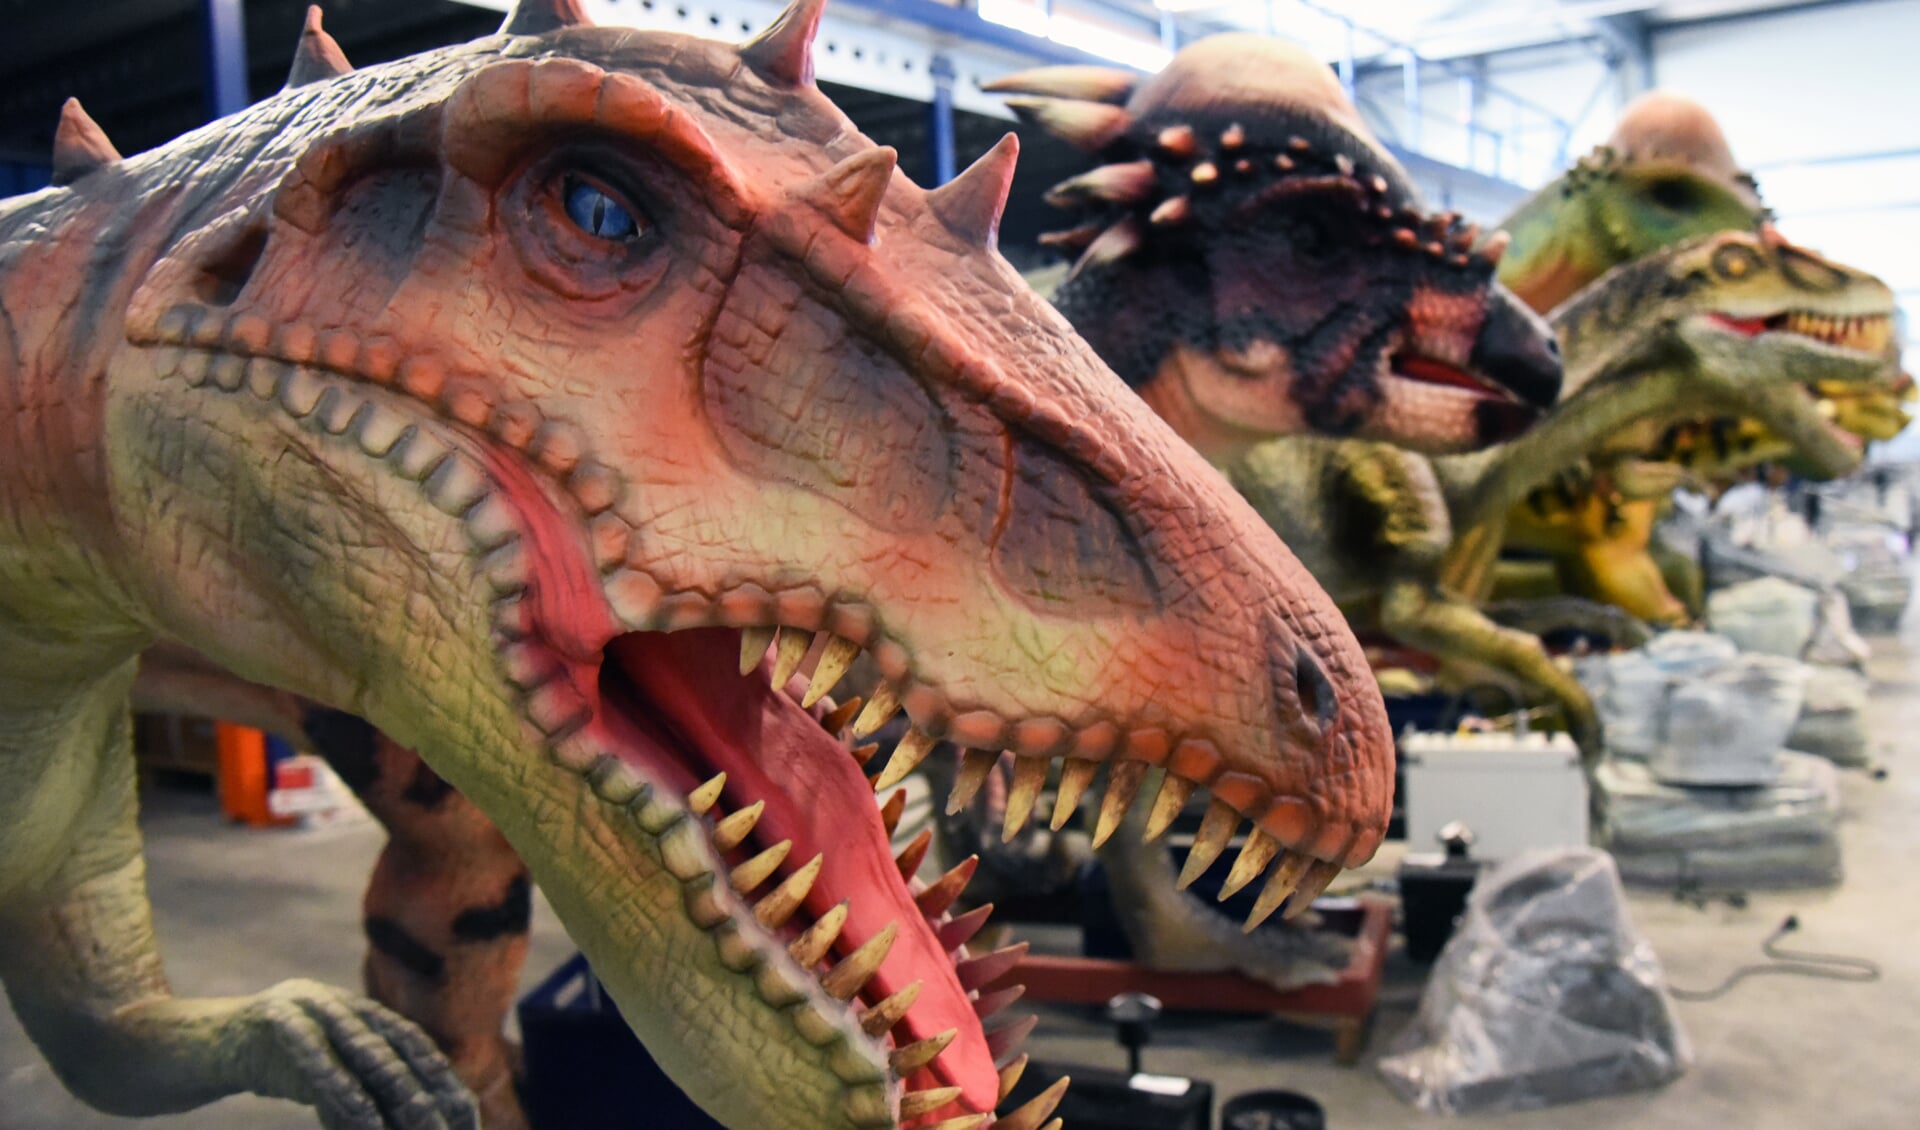 De dinosaurussen zijn tijdens Monster Outlet Saturday terug in het centrum van Surhuisterveen. 